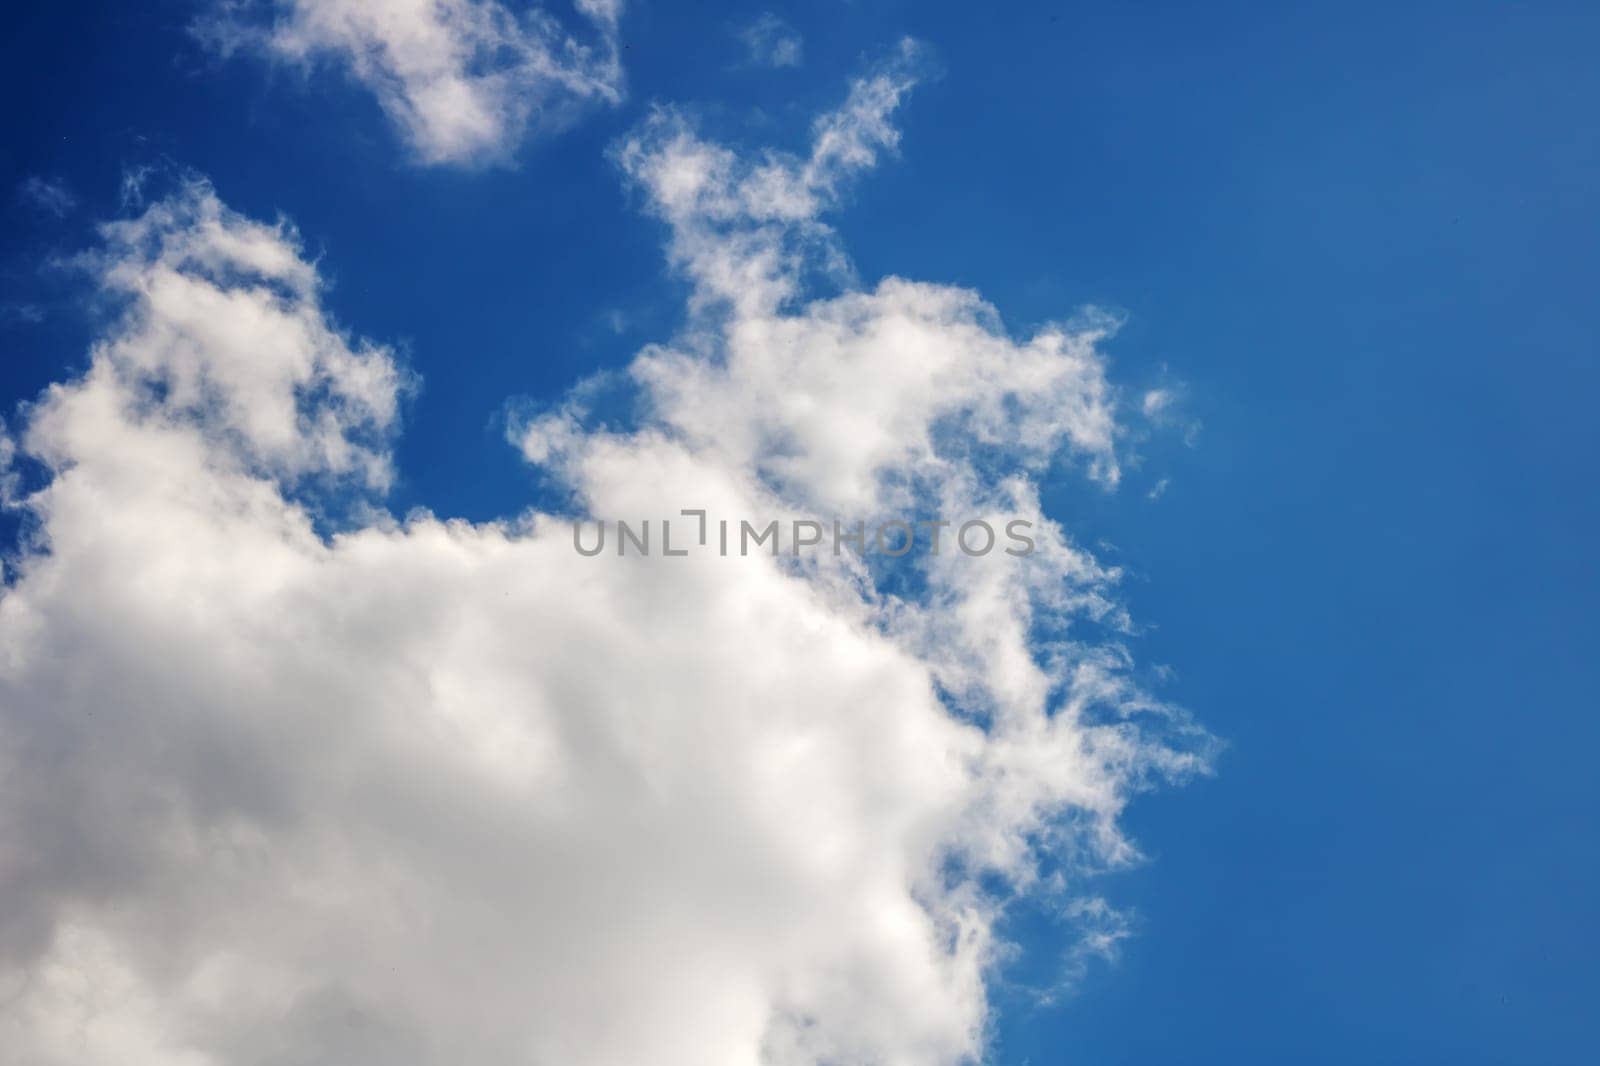 White clouds in a blue bright sky by Vera1703